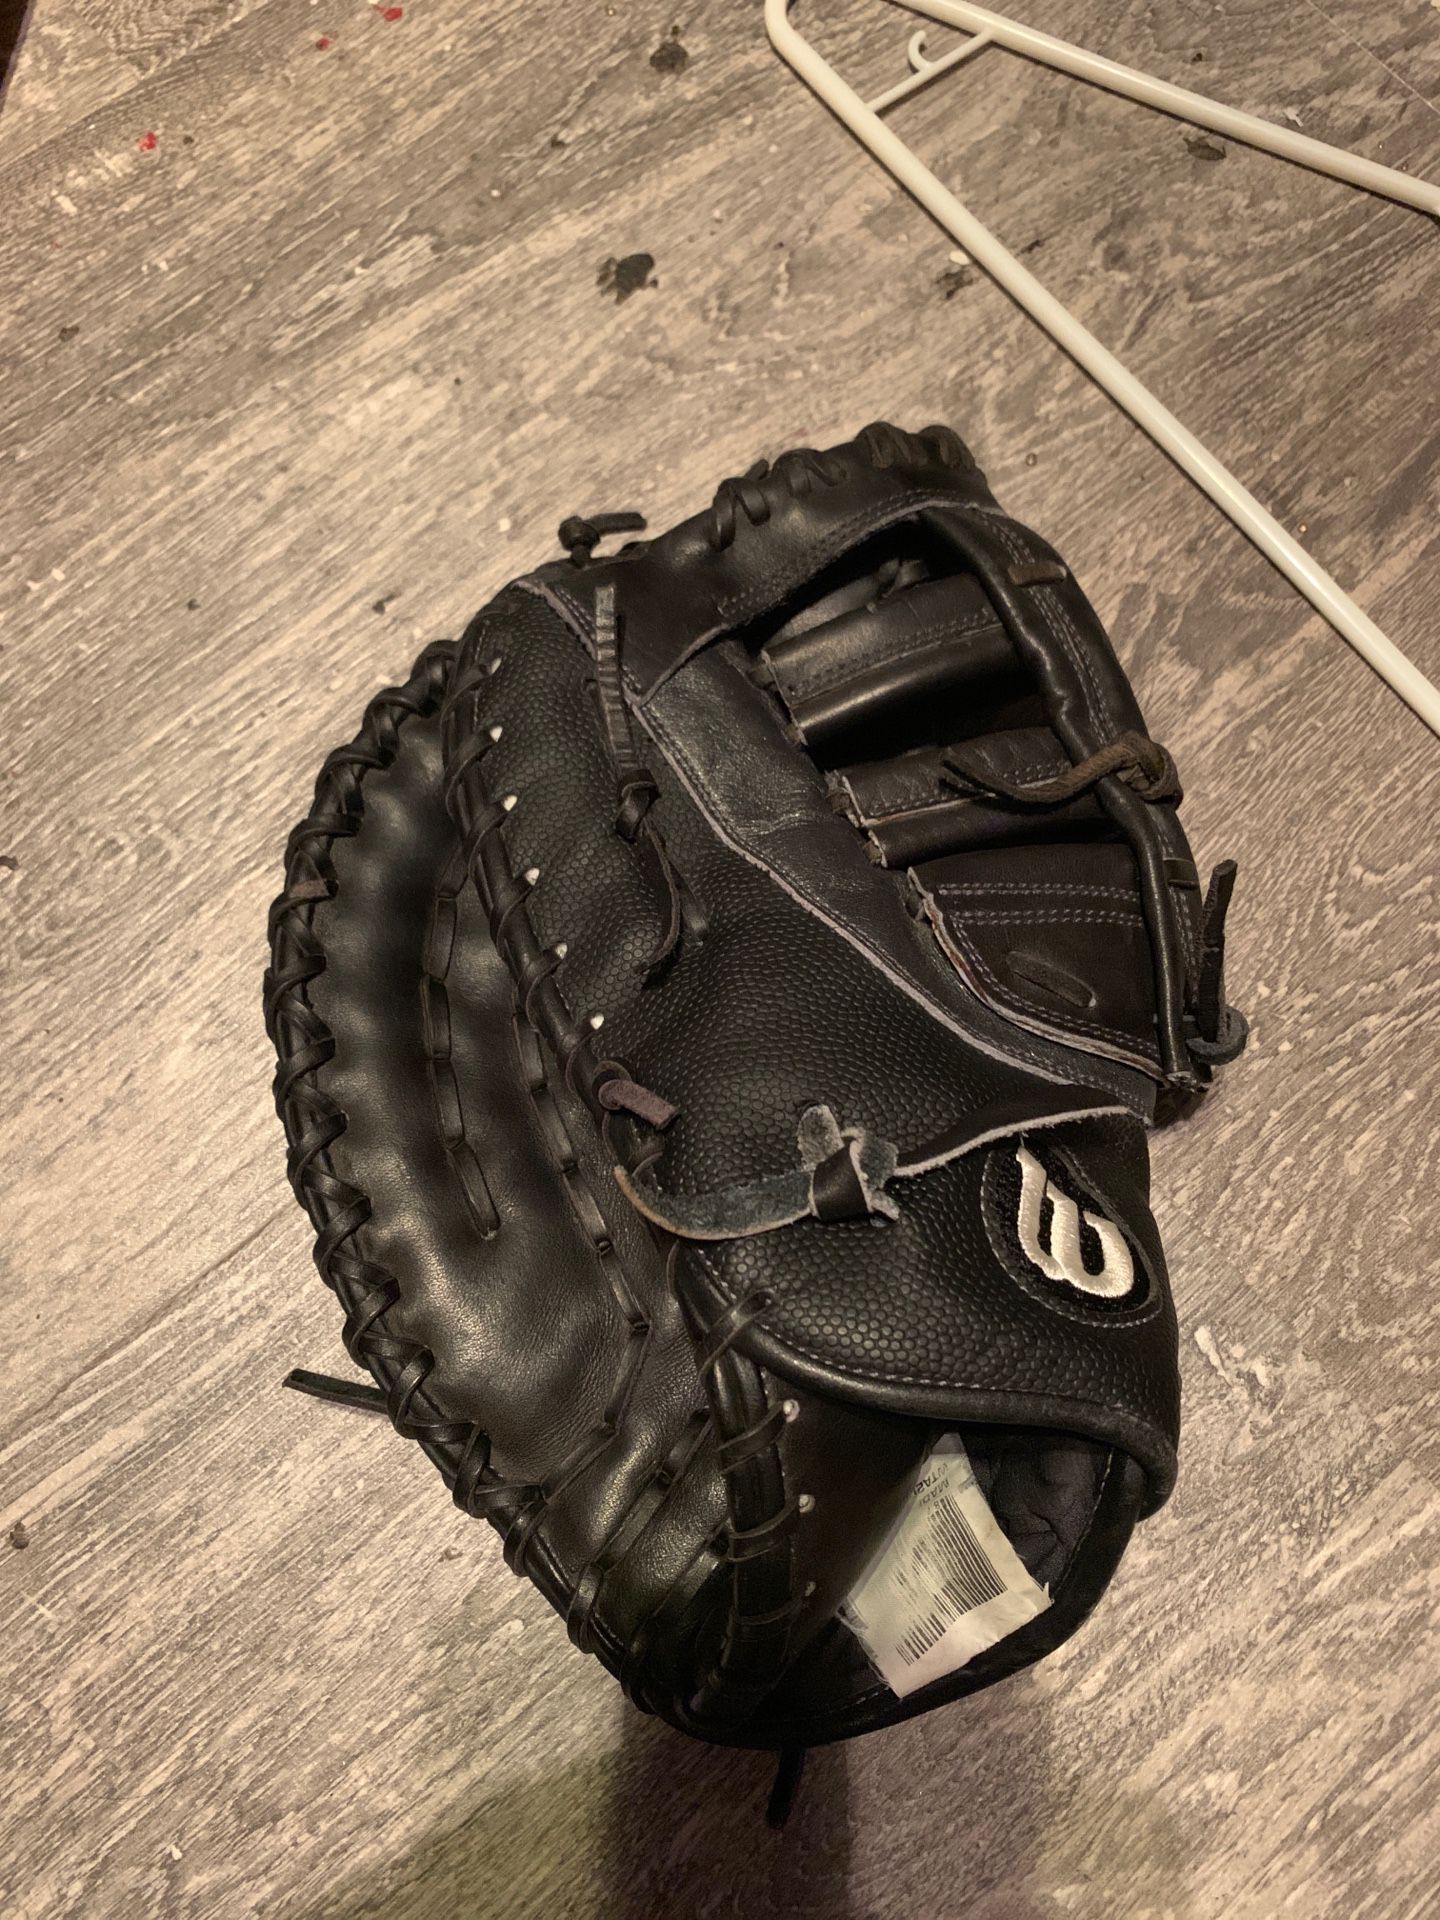 Wilson pro A2000 first basemen glove size 12.25